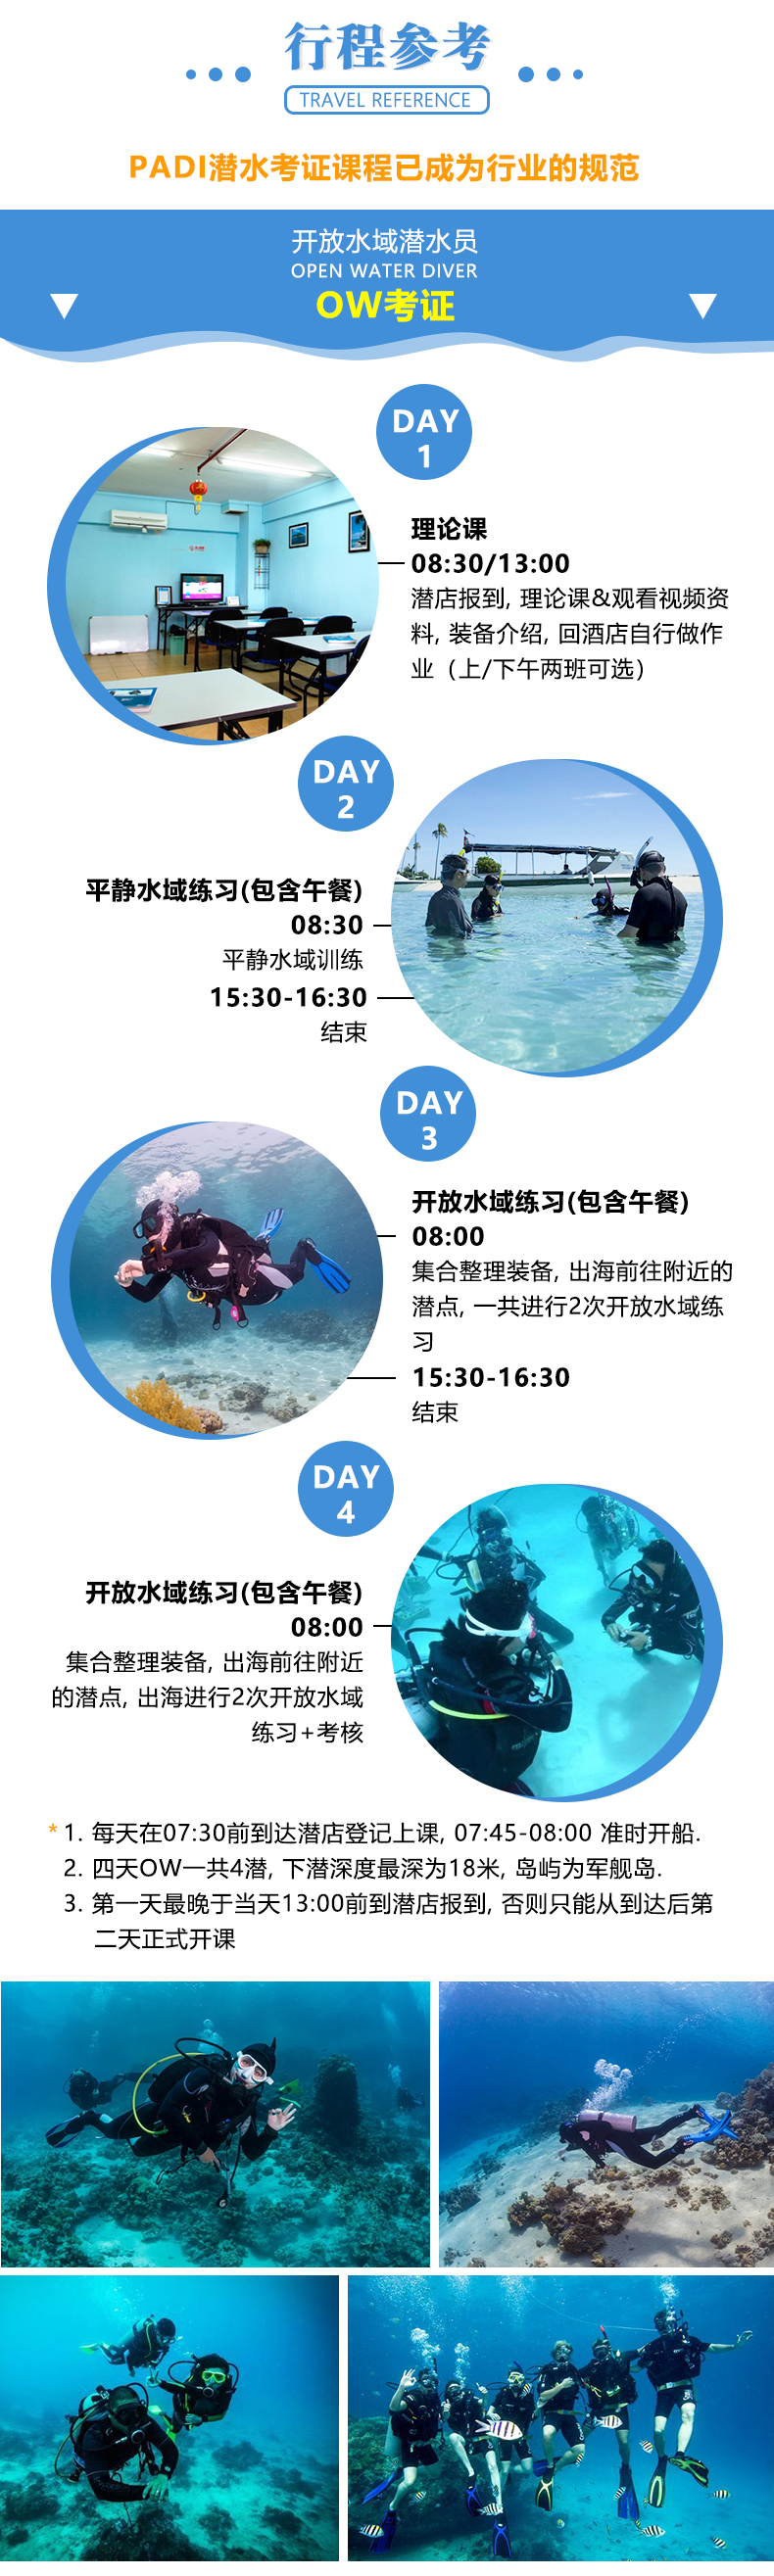 马来西亚仙本那 追浪潜水 OW/AOW考证教学课程 军舰岛免费DSD体验潜水  自由潜 Free Diving  中文教学